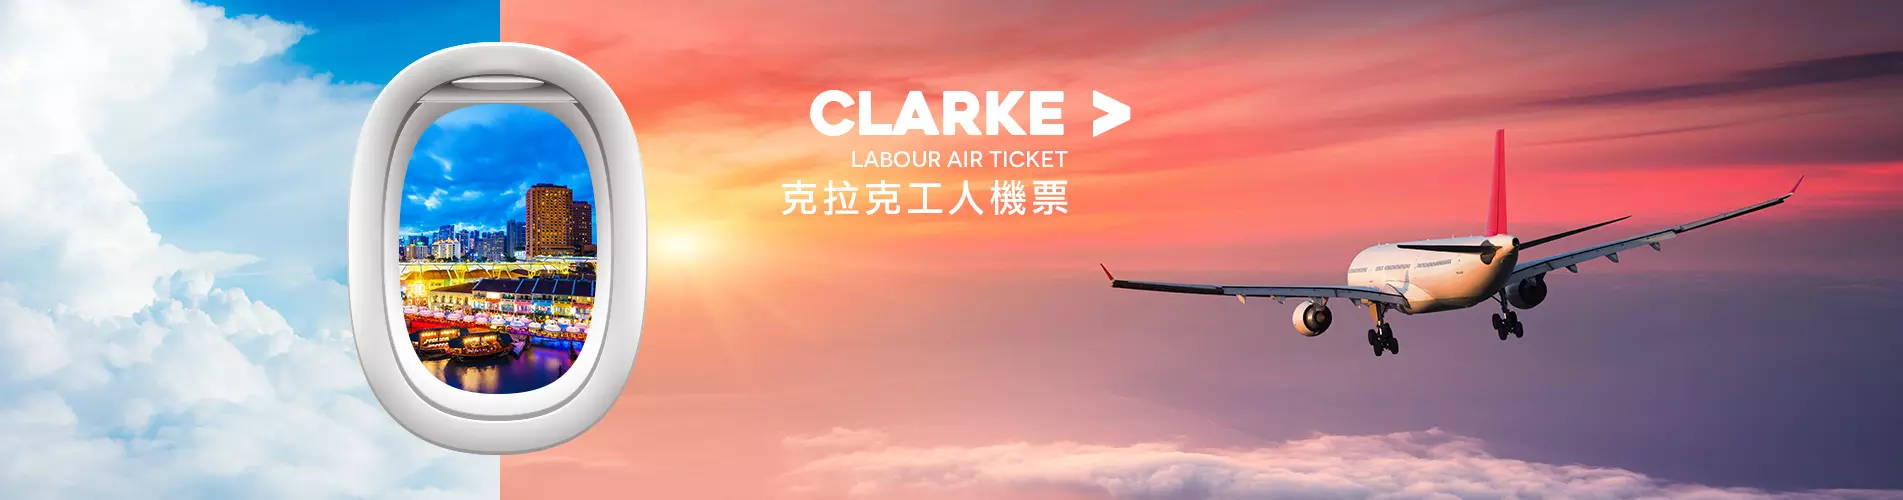 僱傭機票優惠 - 克拉克工人機票 Clarke Labour Air Ticket